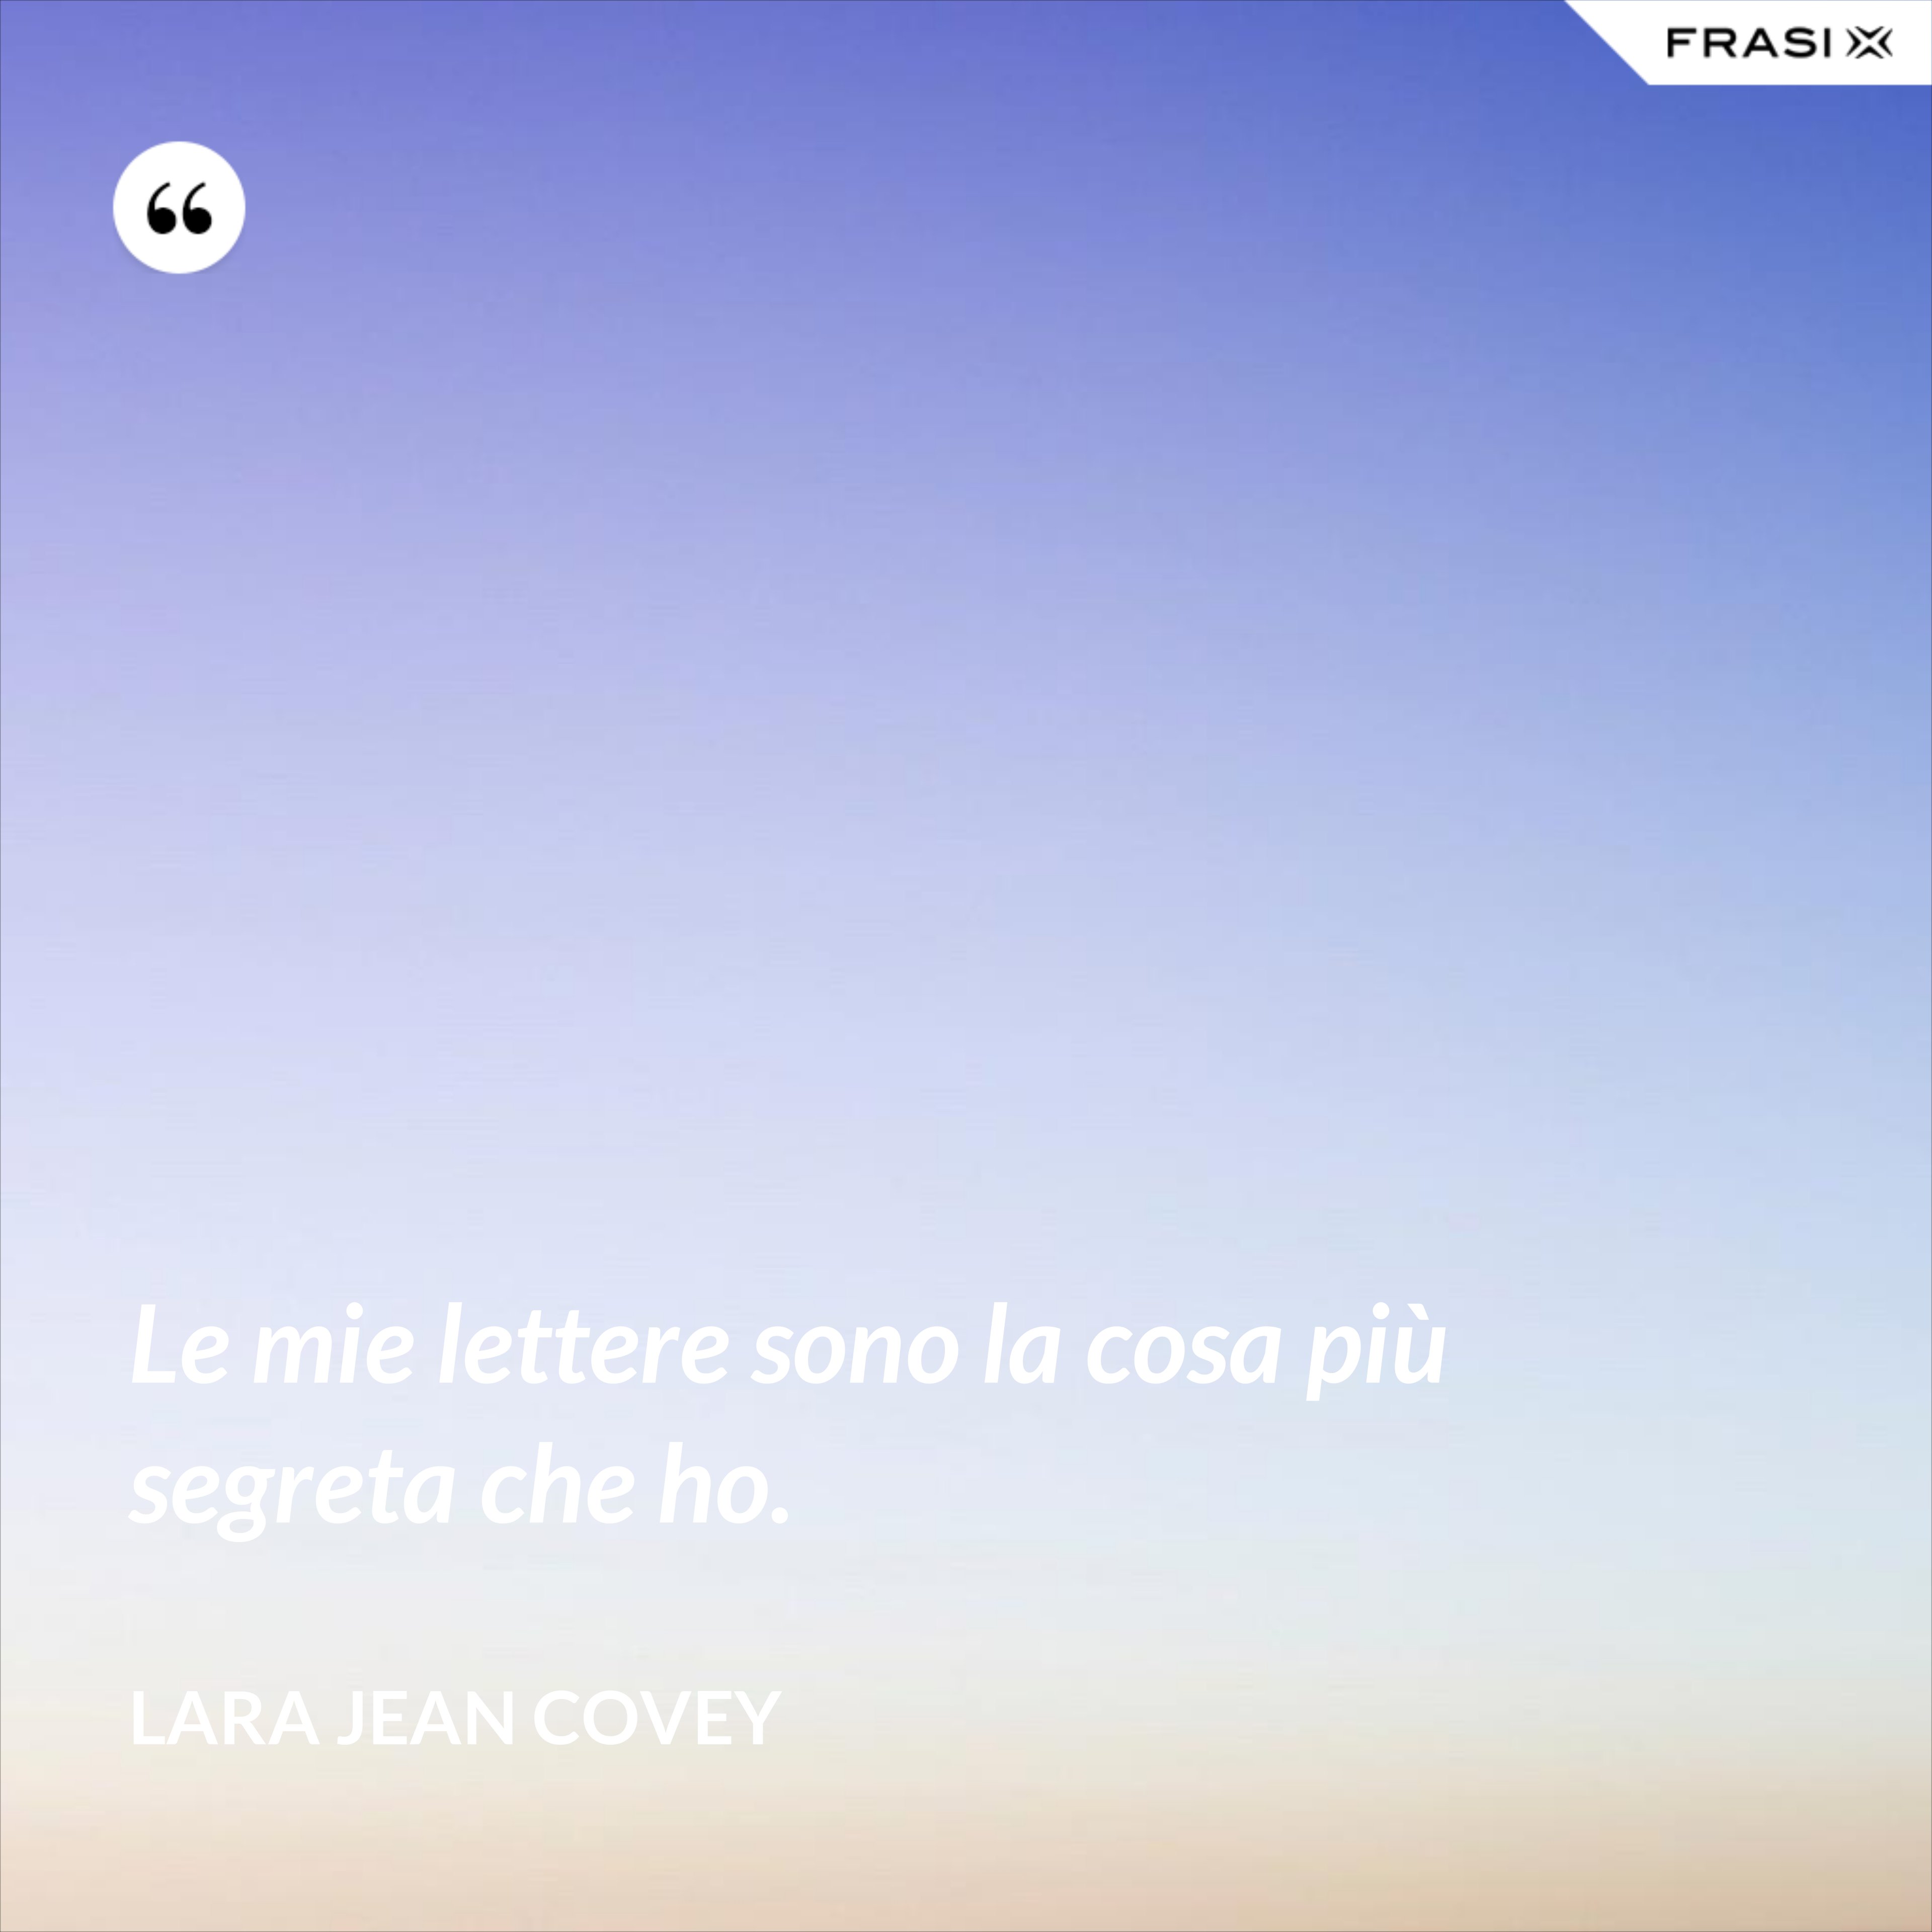 Le mie lettere sono la cosa più segreta che ho. - Lara Jean Covey